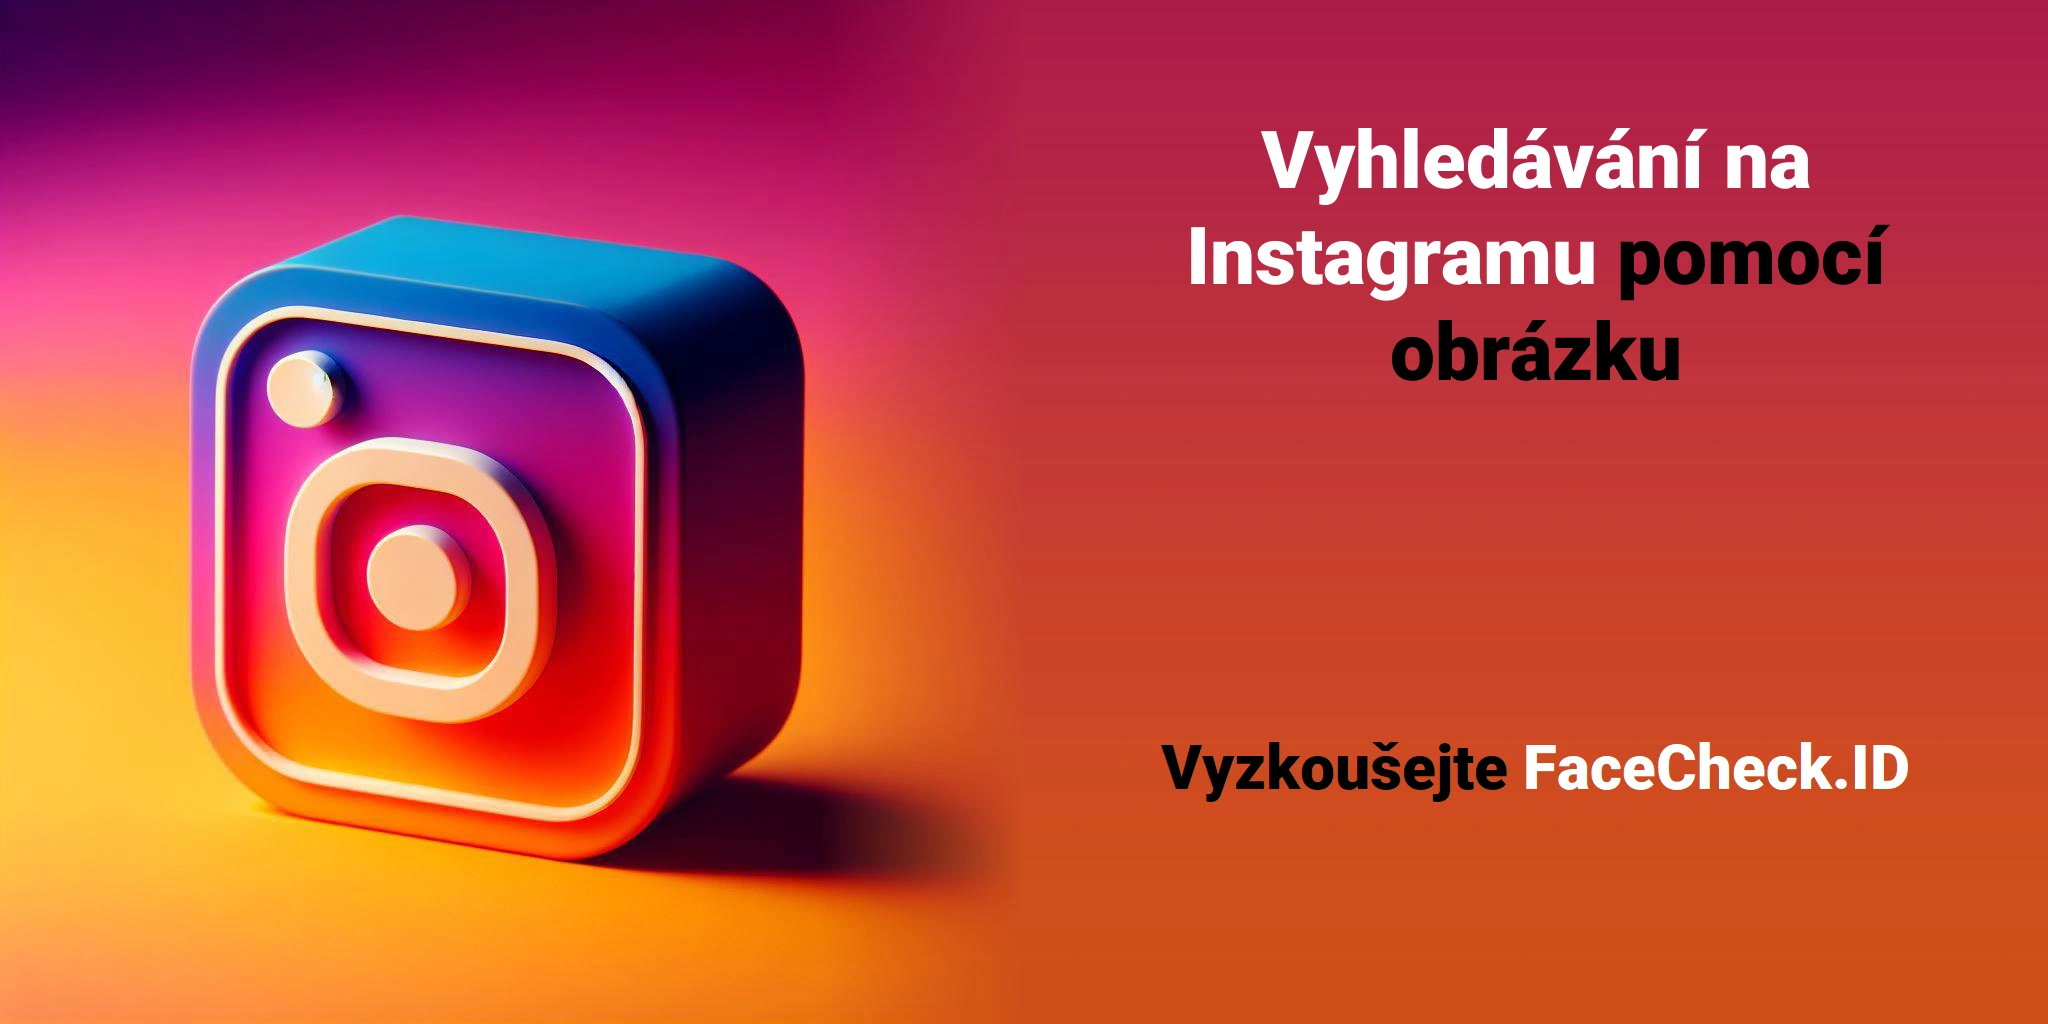 Vyhledávání na Instagramu pomocí obrázku Vyzkoušejte FaceCheck.ID